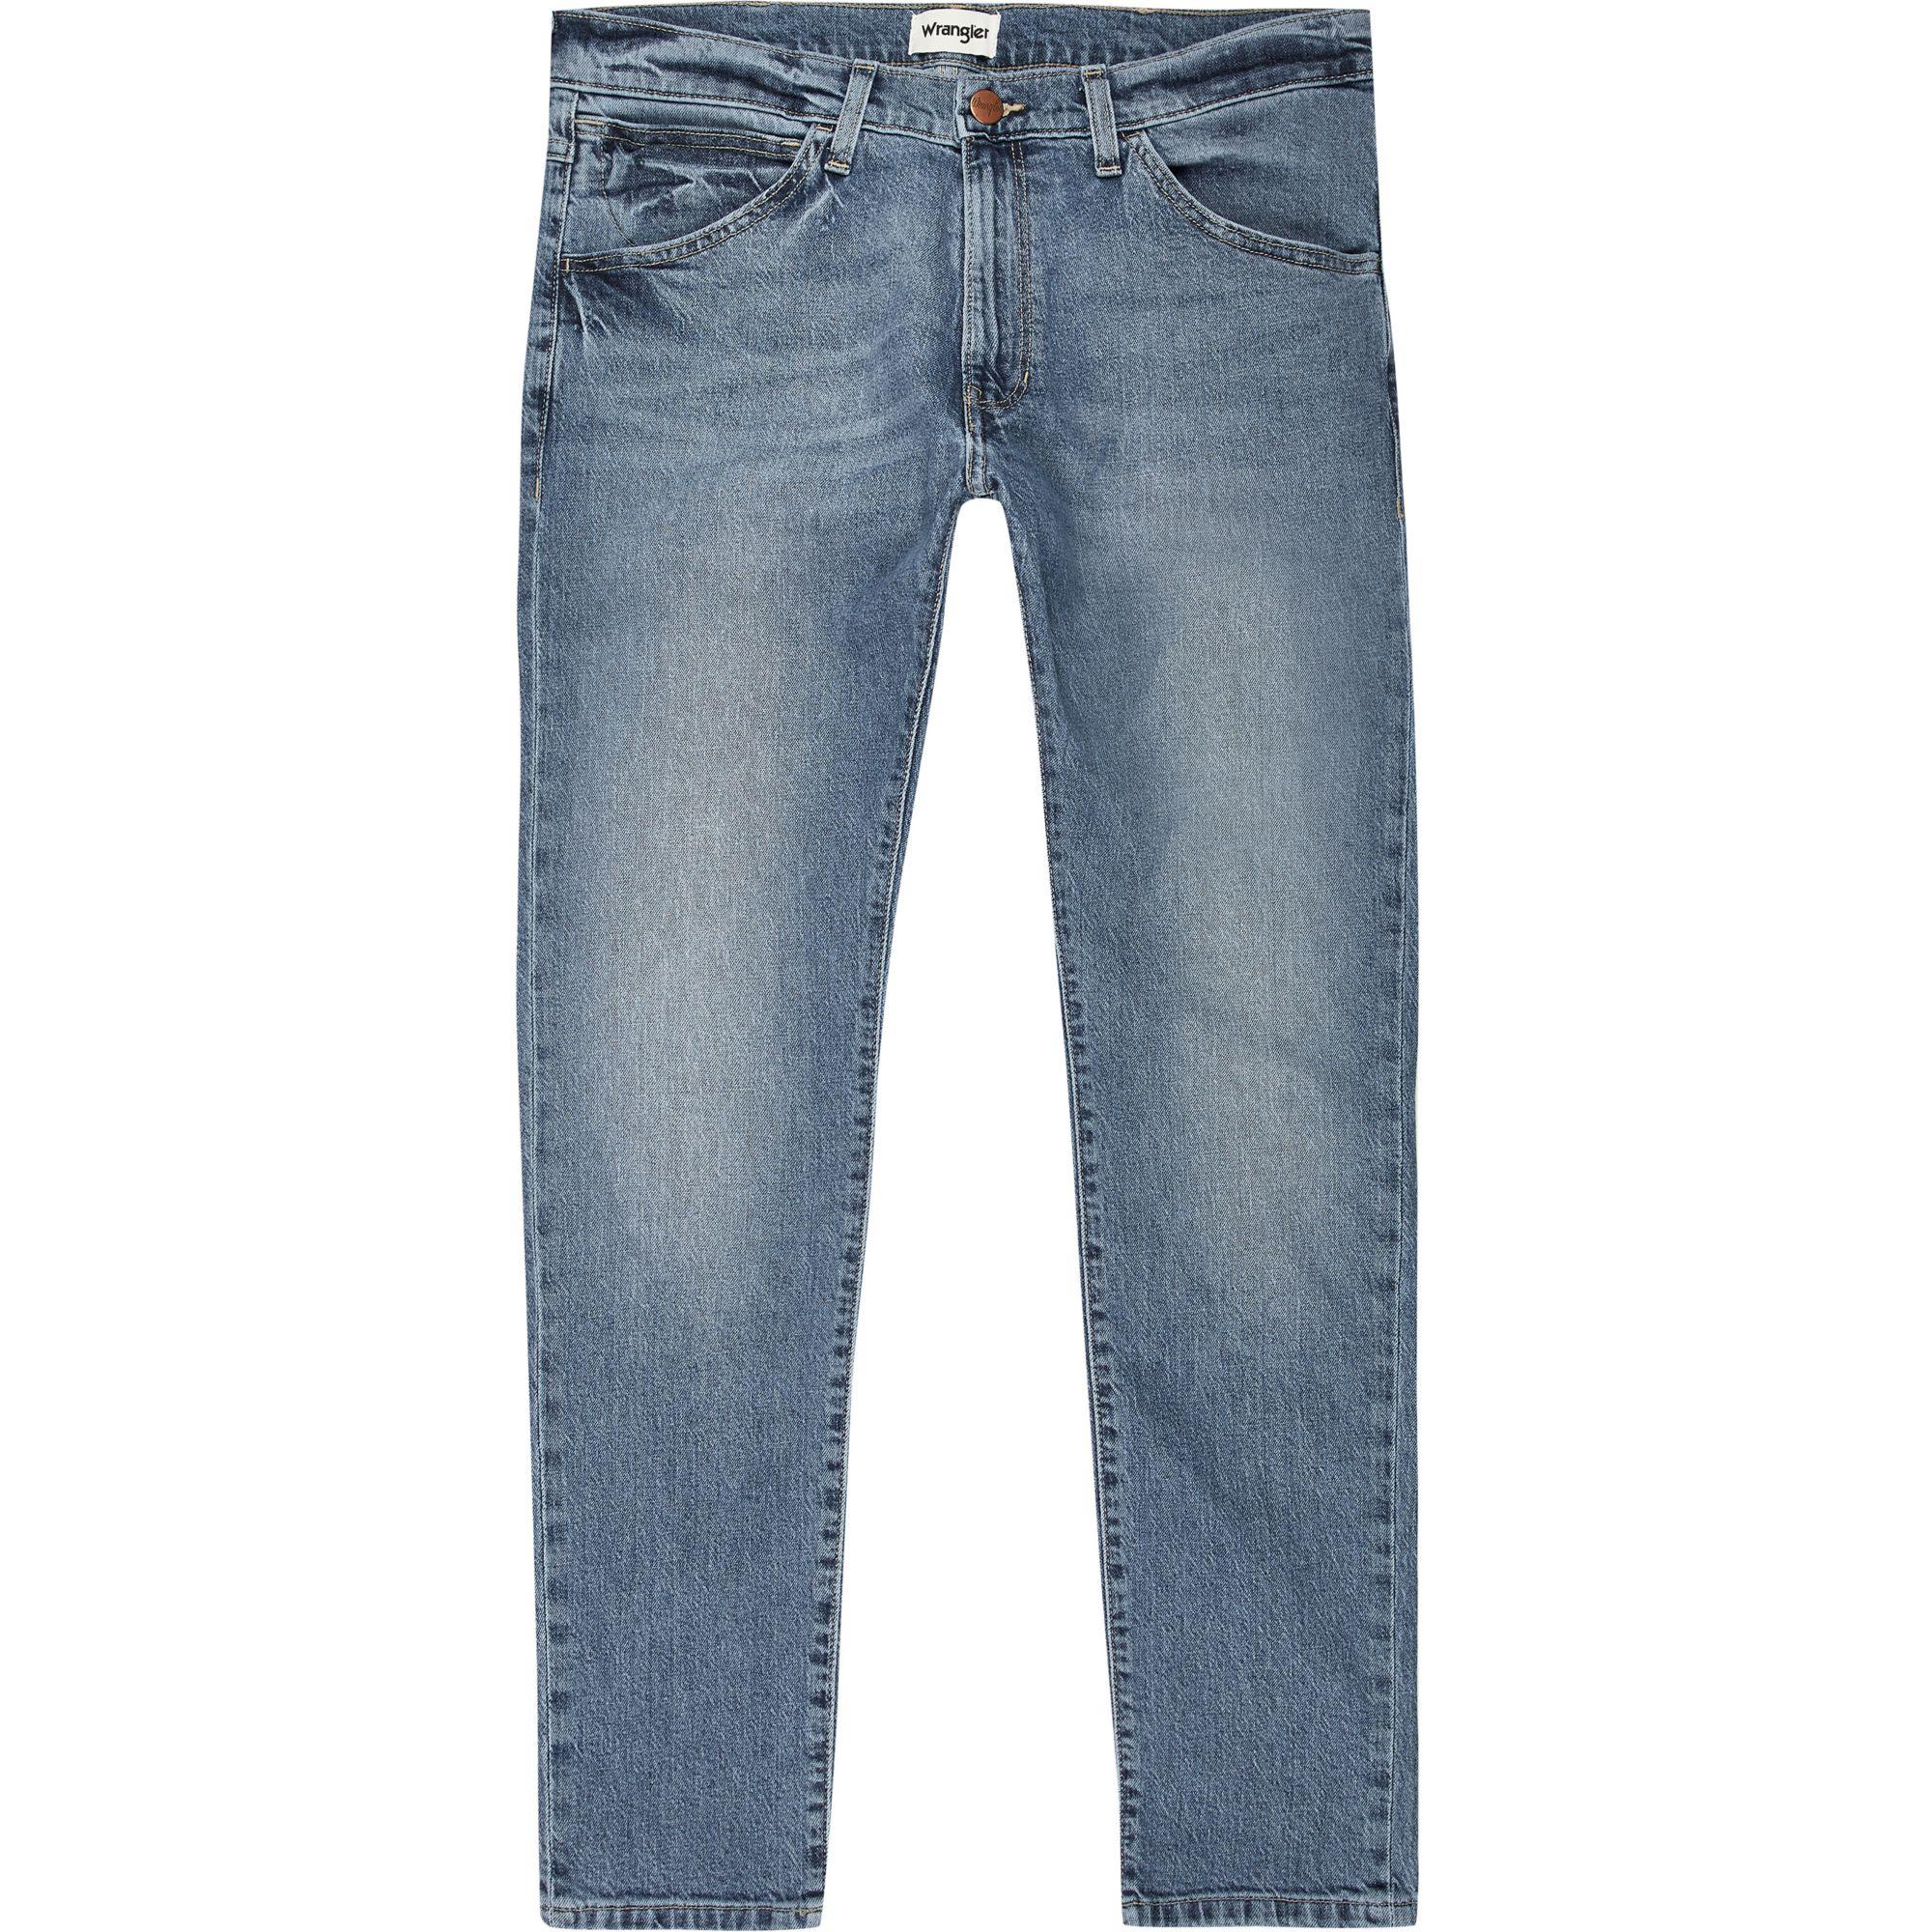 Wrangler Denim River Island Light Skinny Jeans in Blue for Men - Lyst